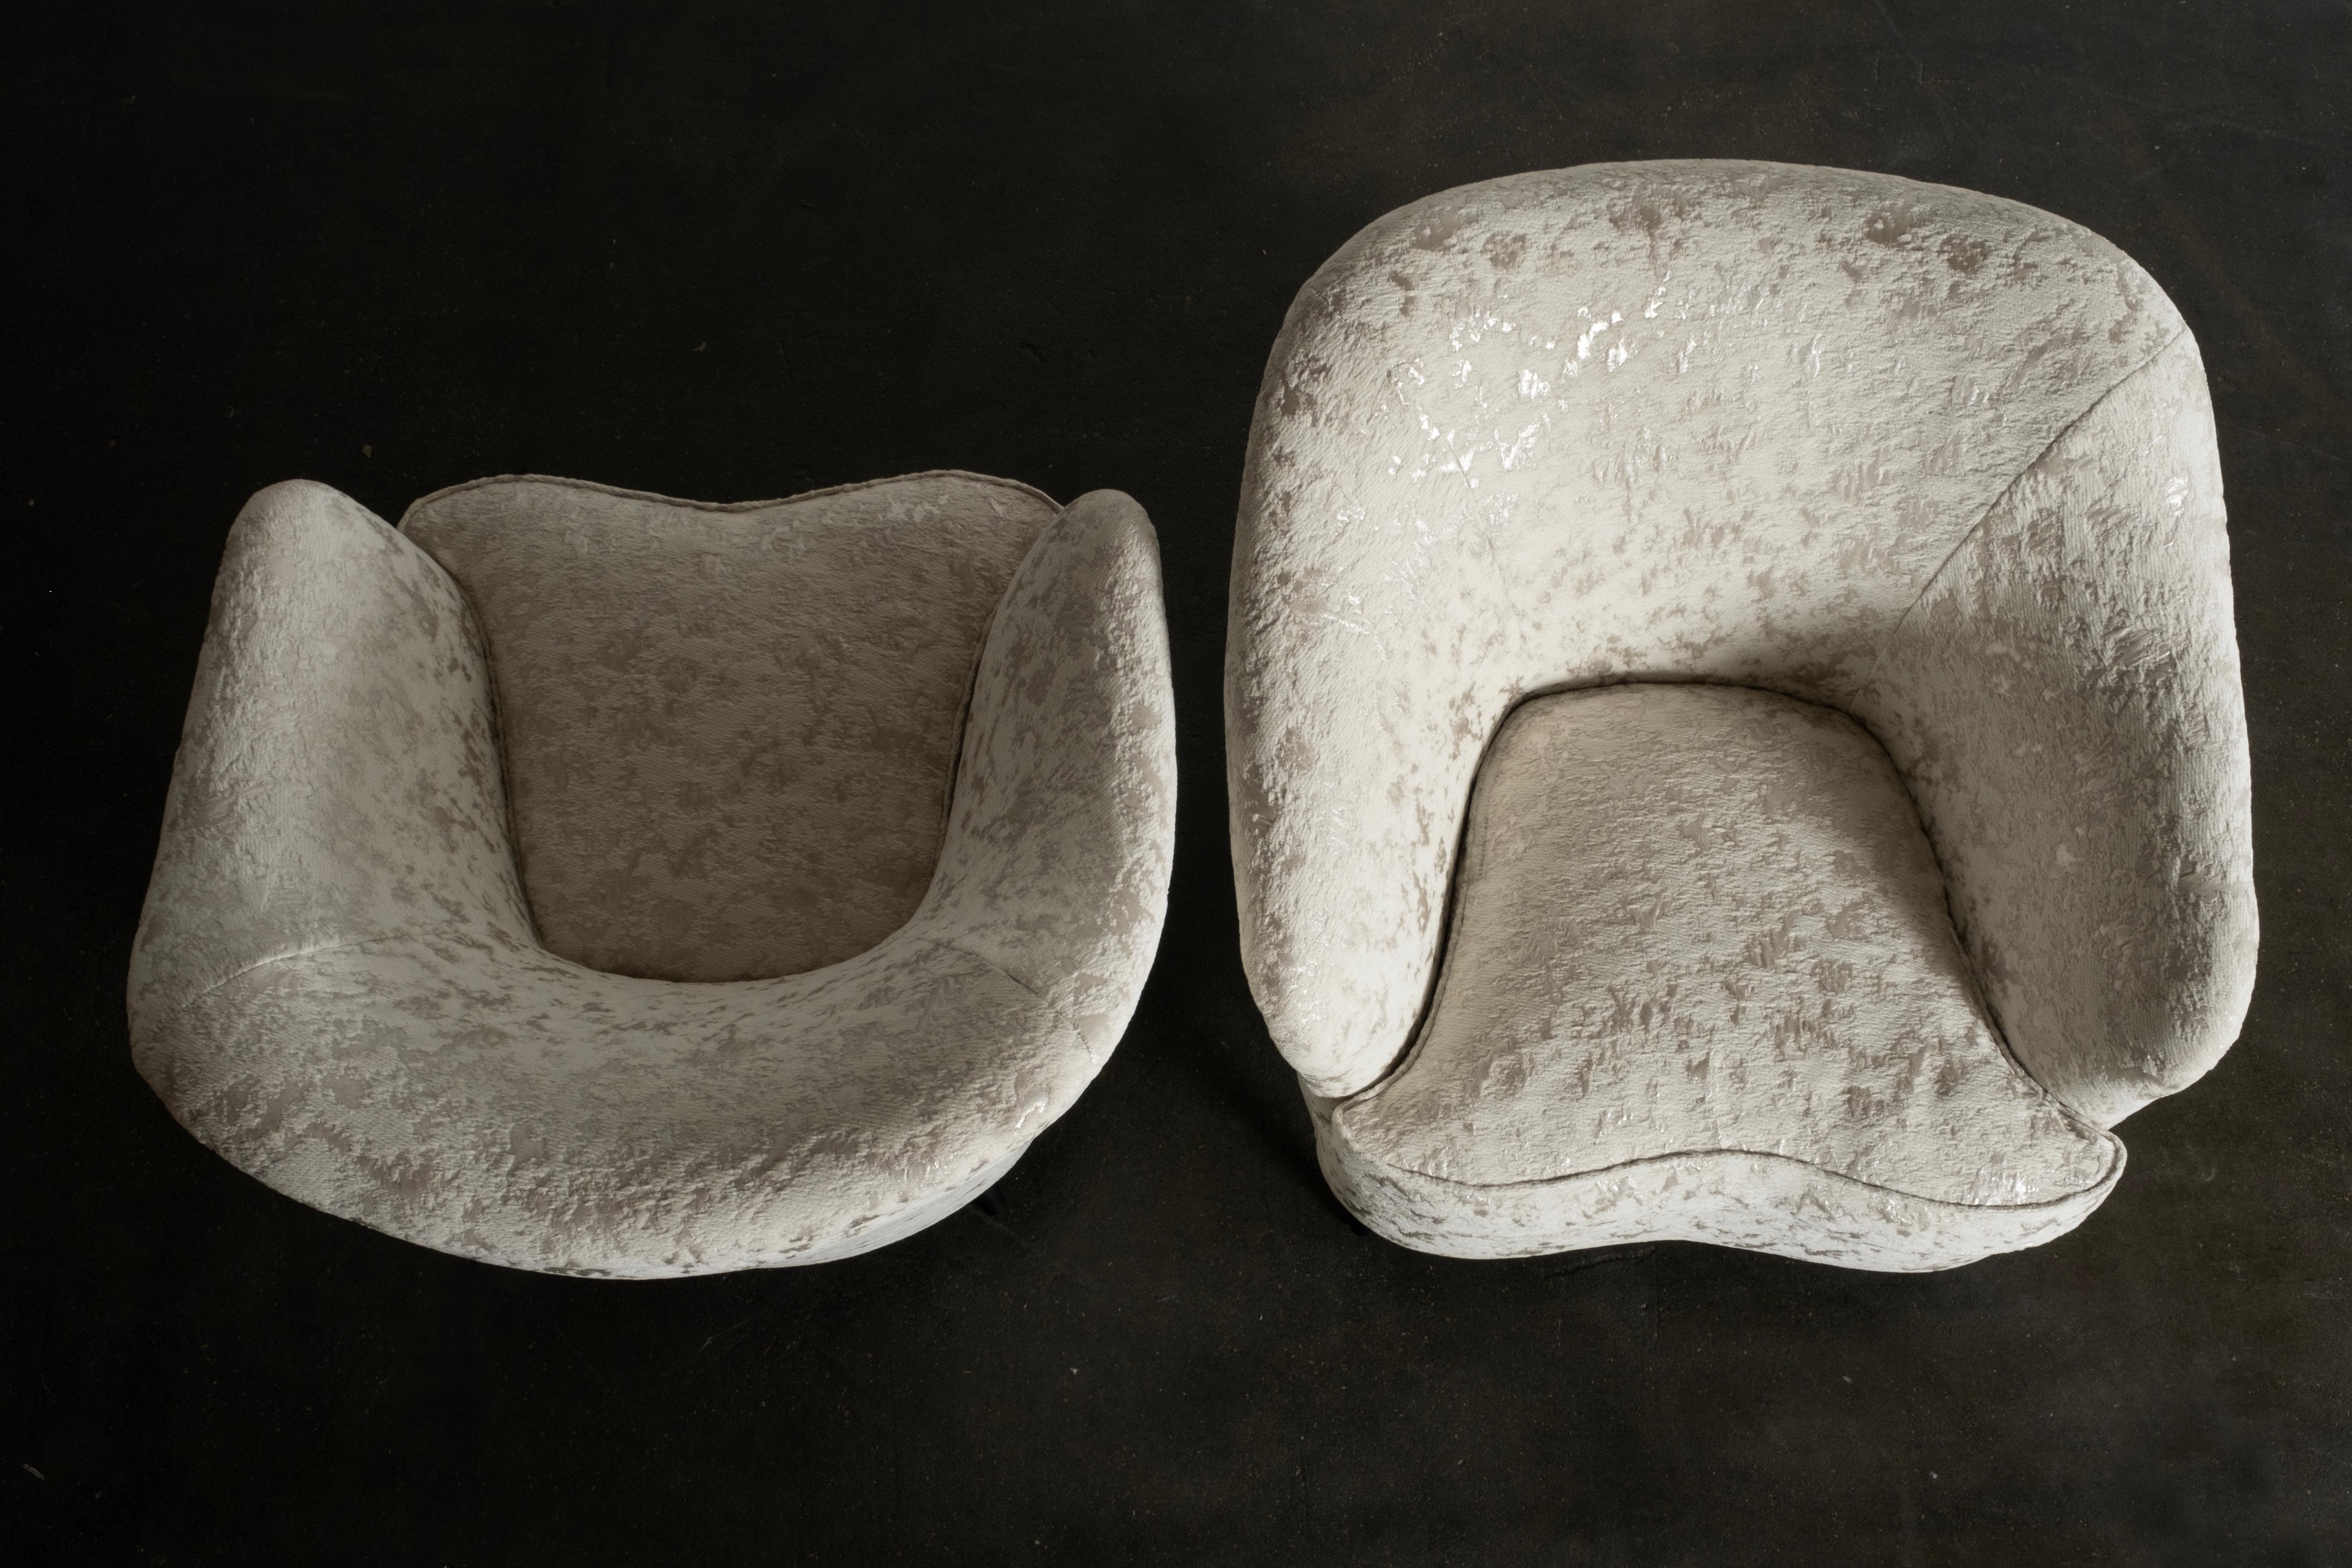 Collectible Vintage italienischen Sessel von Gio Ponti für die Casa e Giardino Fertigung Unternehmen in den späten 1930er Jahren entworfen.

Dieses ikonische Designerstück wurde komplett restauriert, von der Zarge über die speziellen Messingbeine